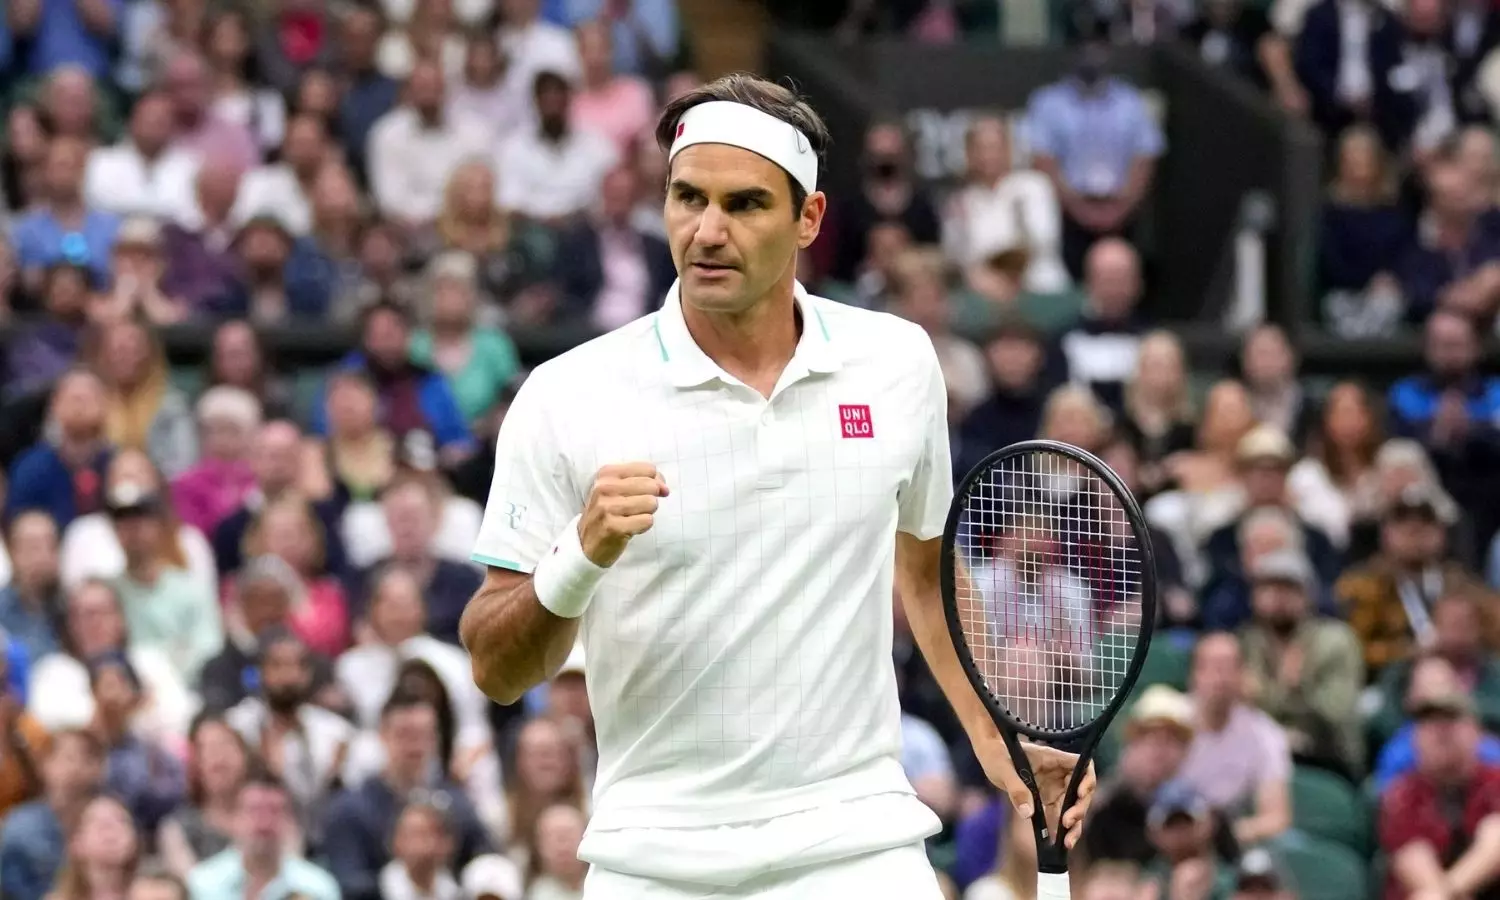 BREAKING: Roger Federer retires